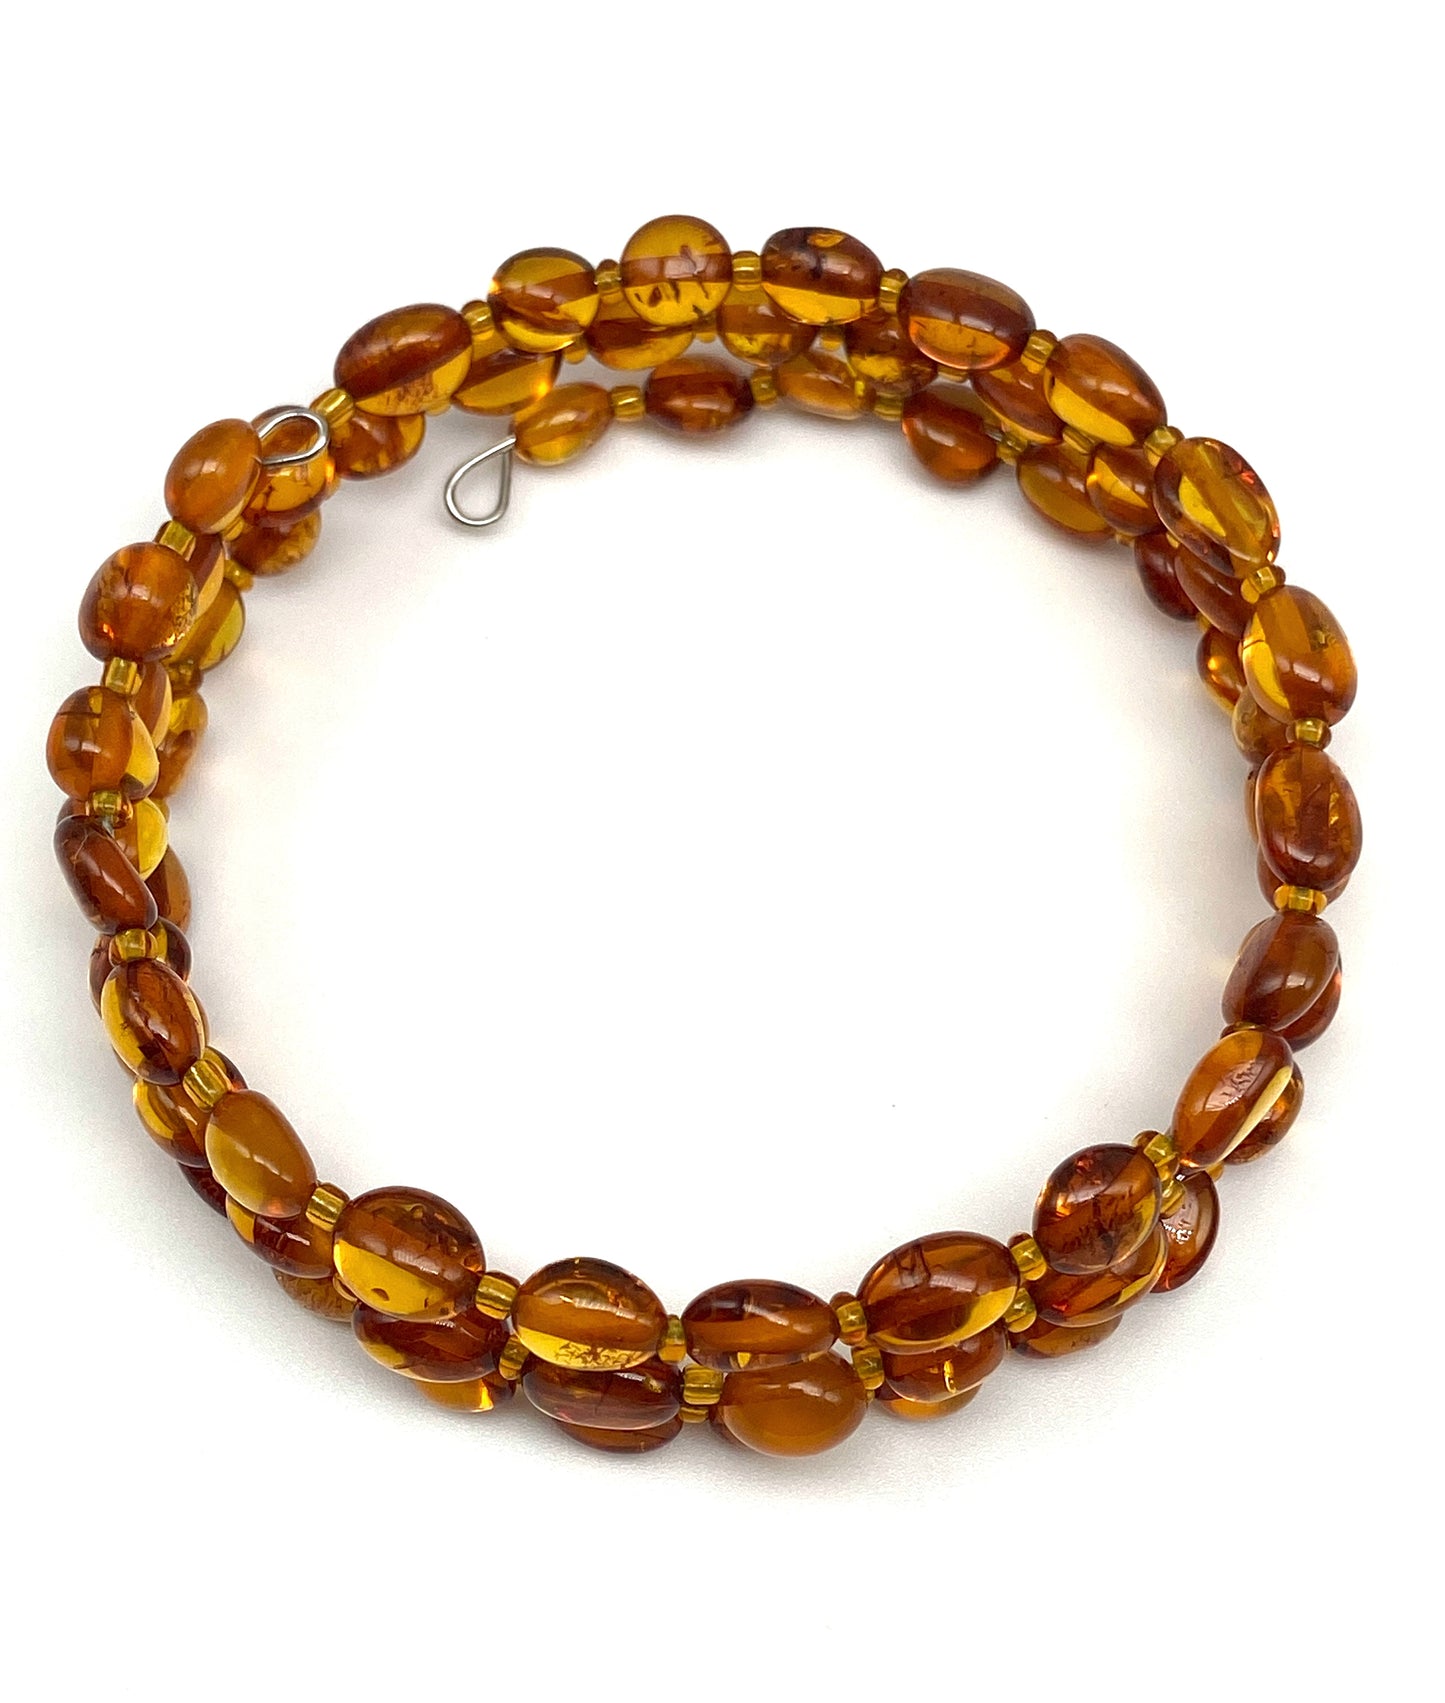 Spiral - amber bracelet